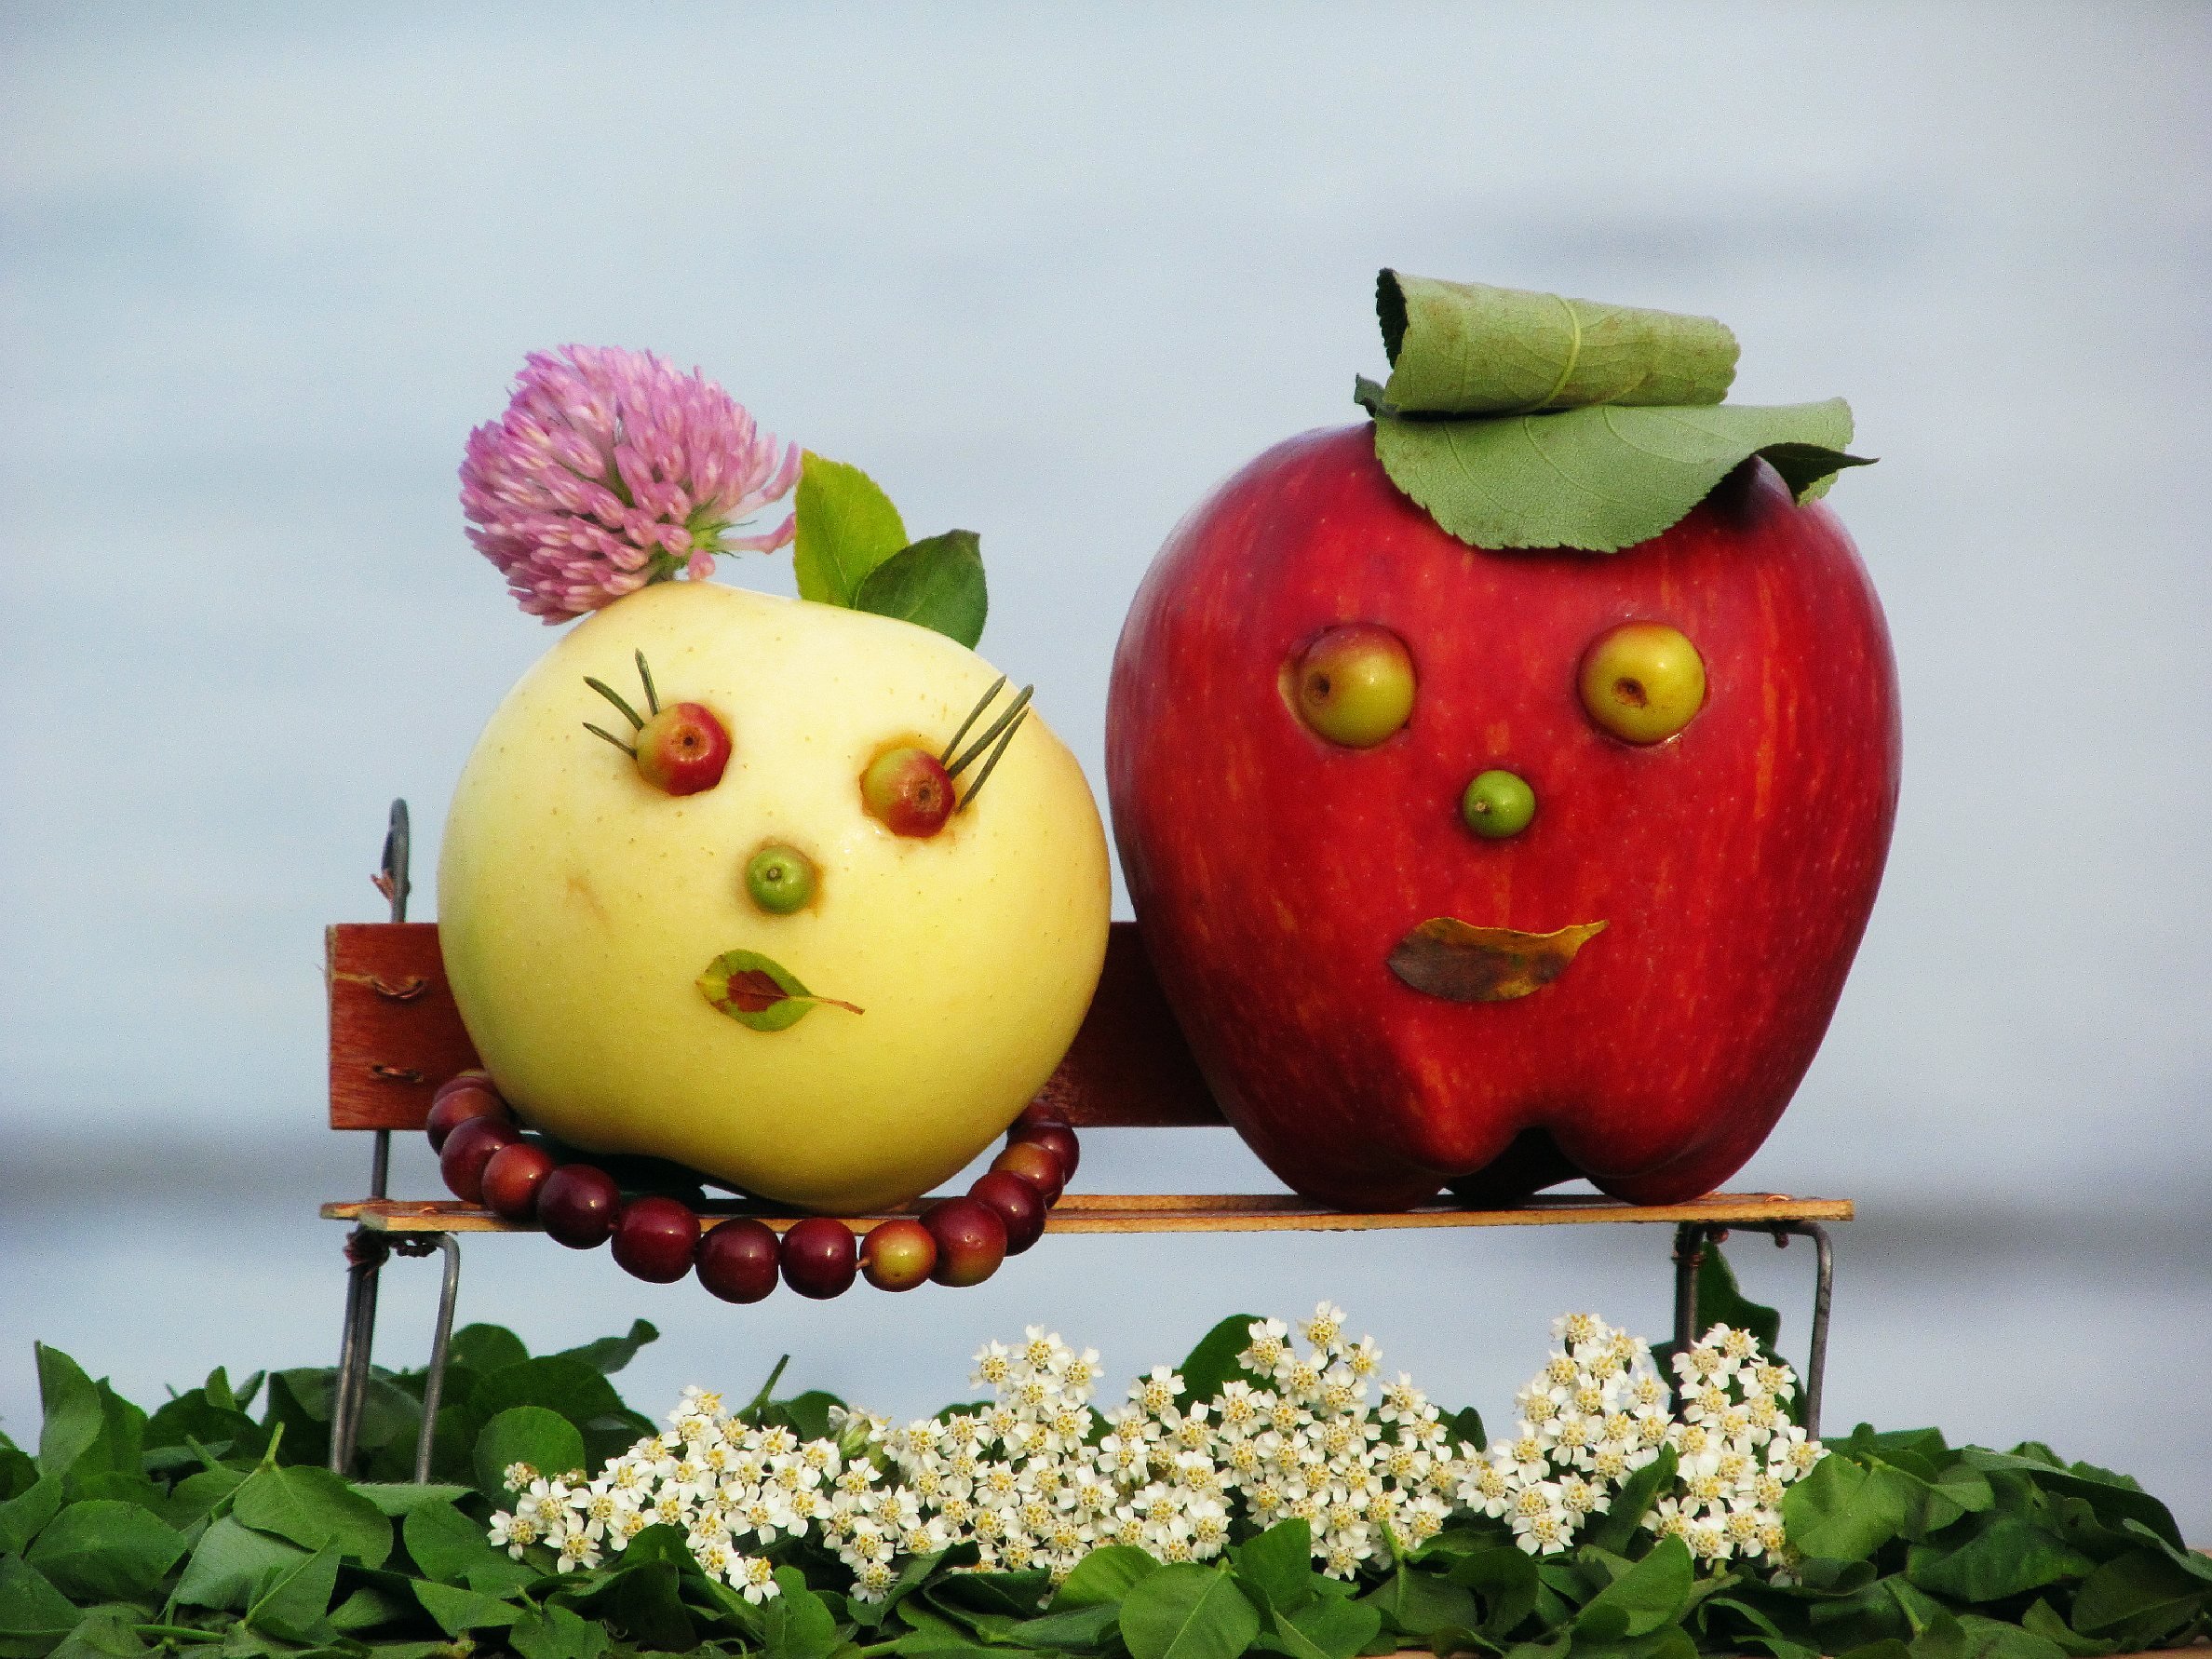 Осінні композиції своїми руками з овочів та фруктів: Осінні вироби з овочів та фруктів. Дитячі вироби в садок.